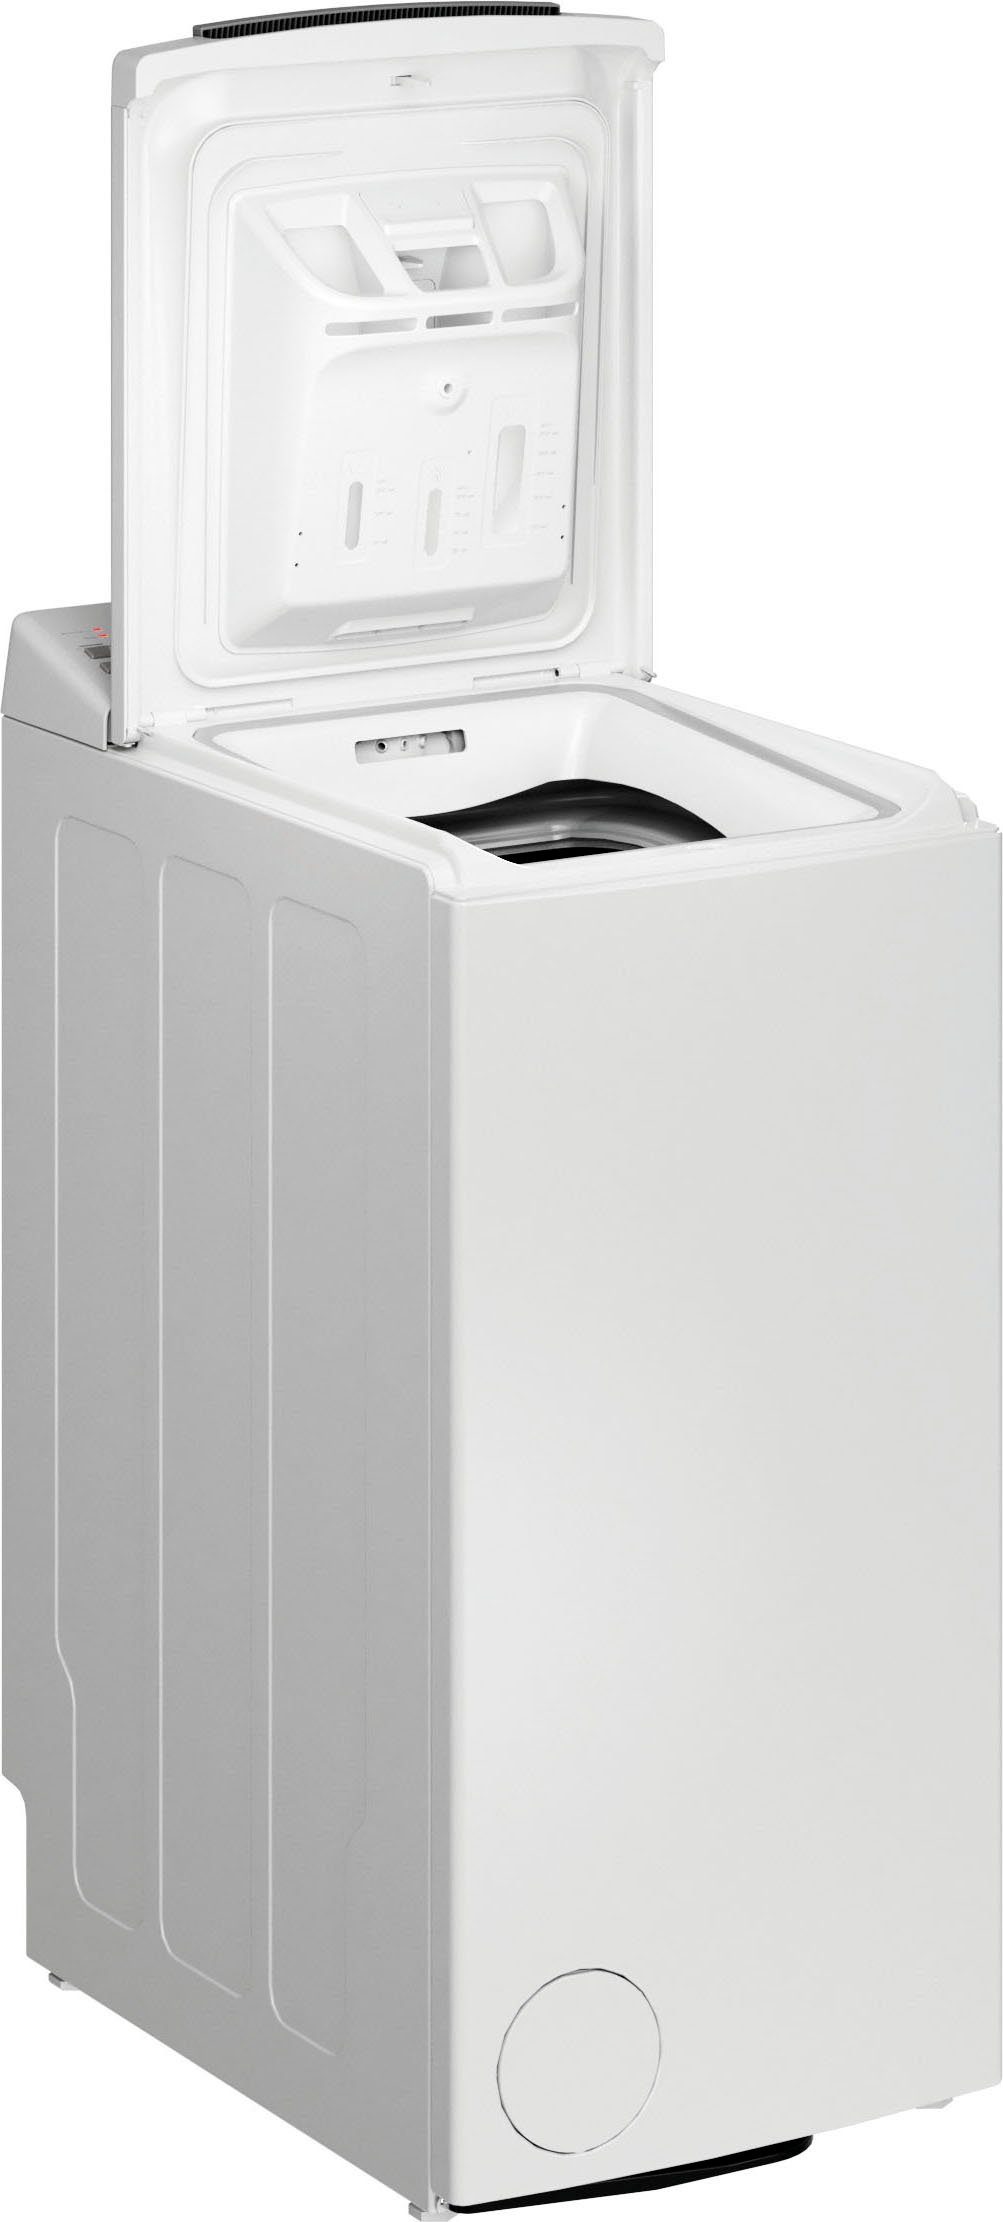 BAUKNECHT Waschmaschine Toplader WMT B5, 6 U/min 1200 6513 kg